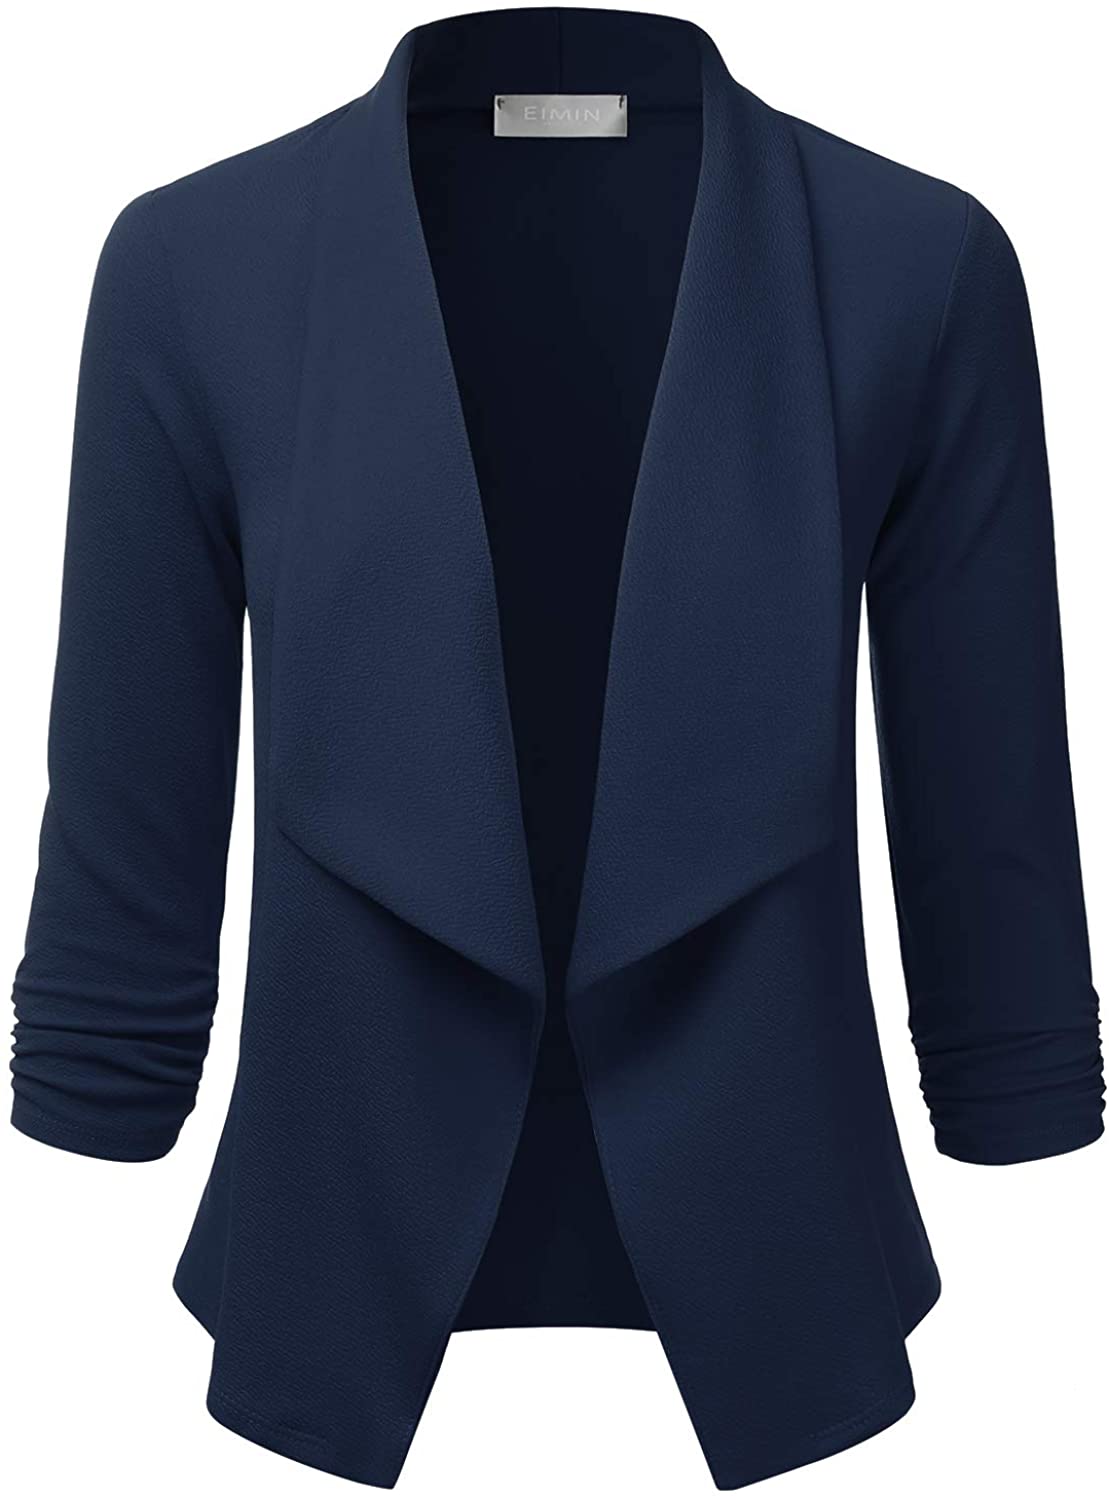 Womens Jacket Coat Blazer Open Front Short Cardigan Suit Women 3/4 Sleeve Jacket Coat